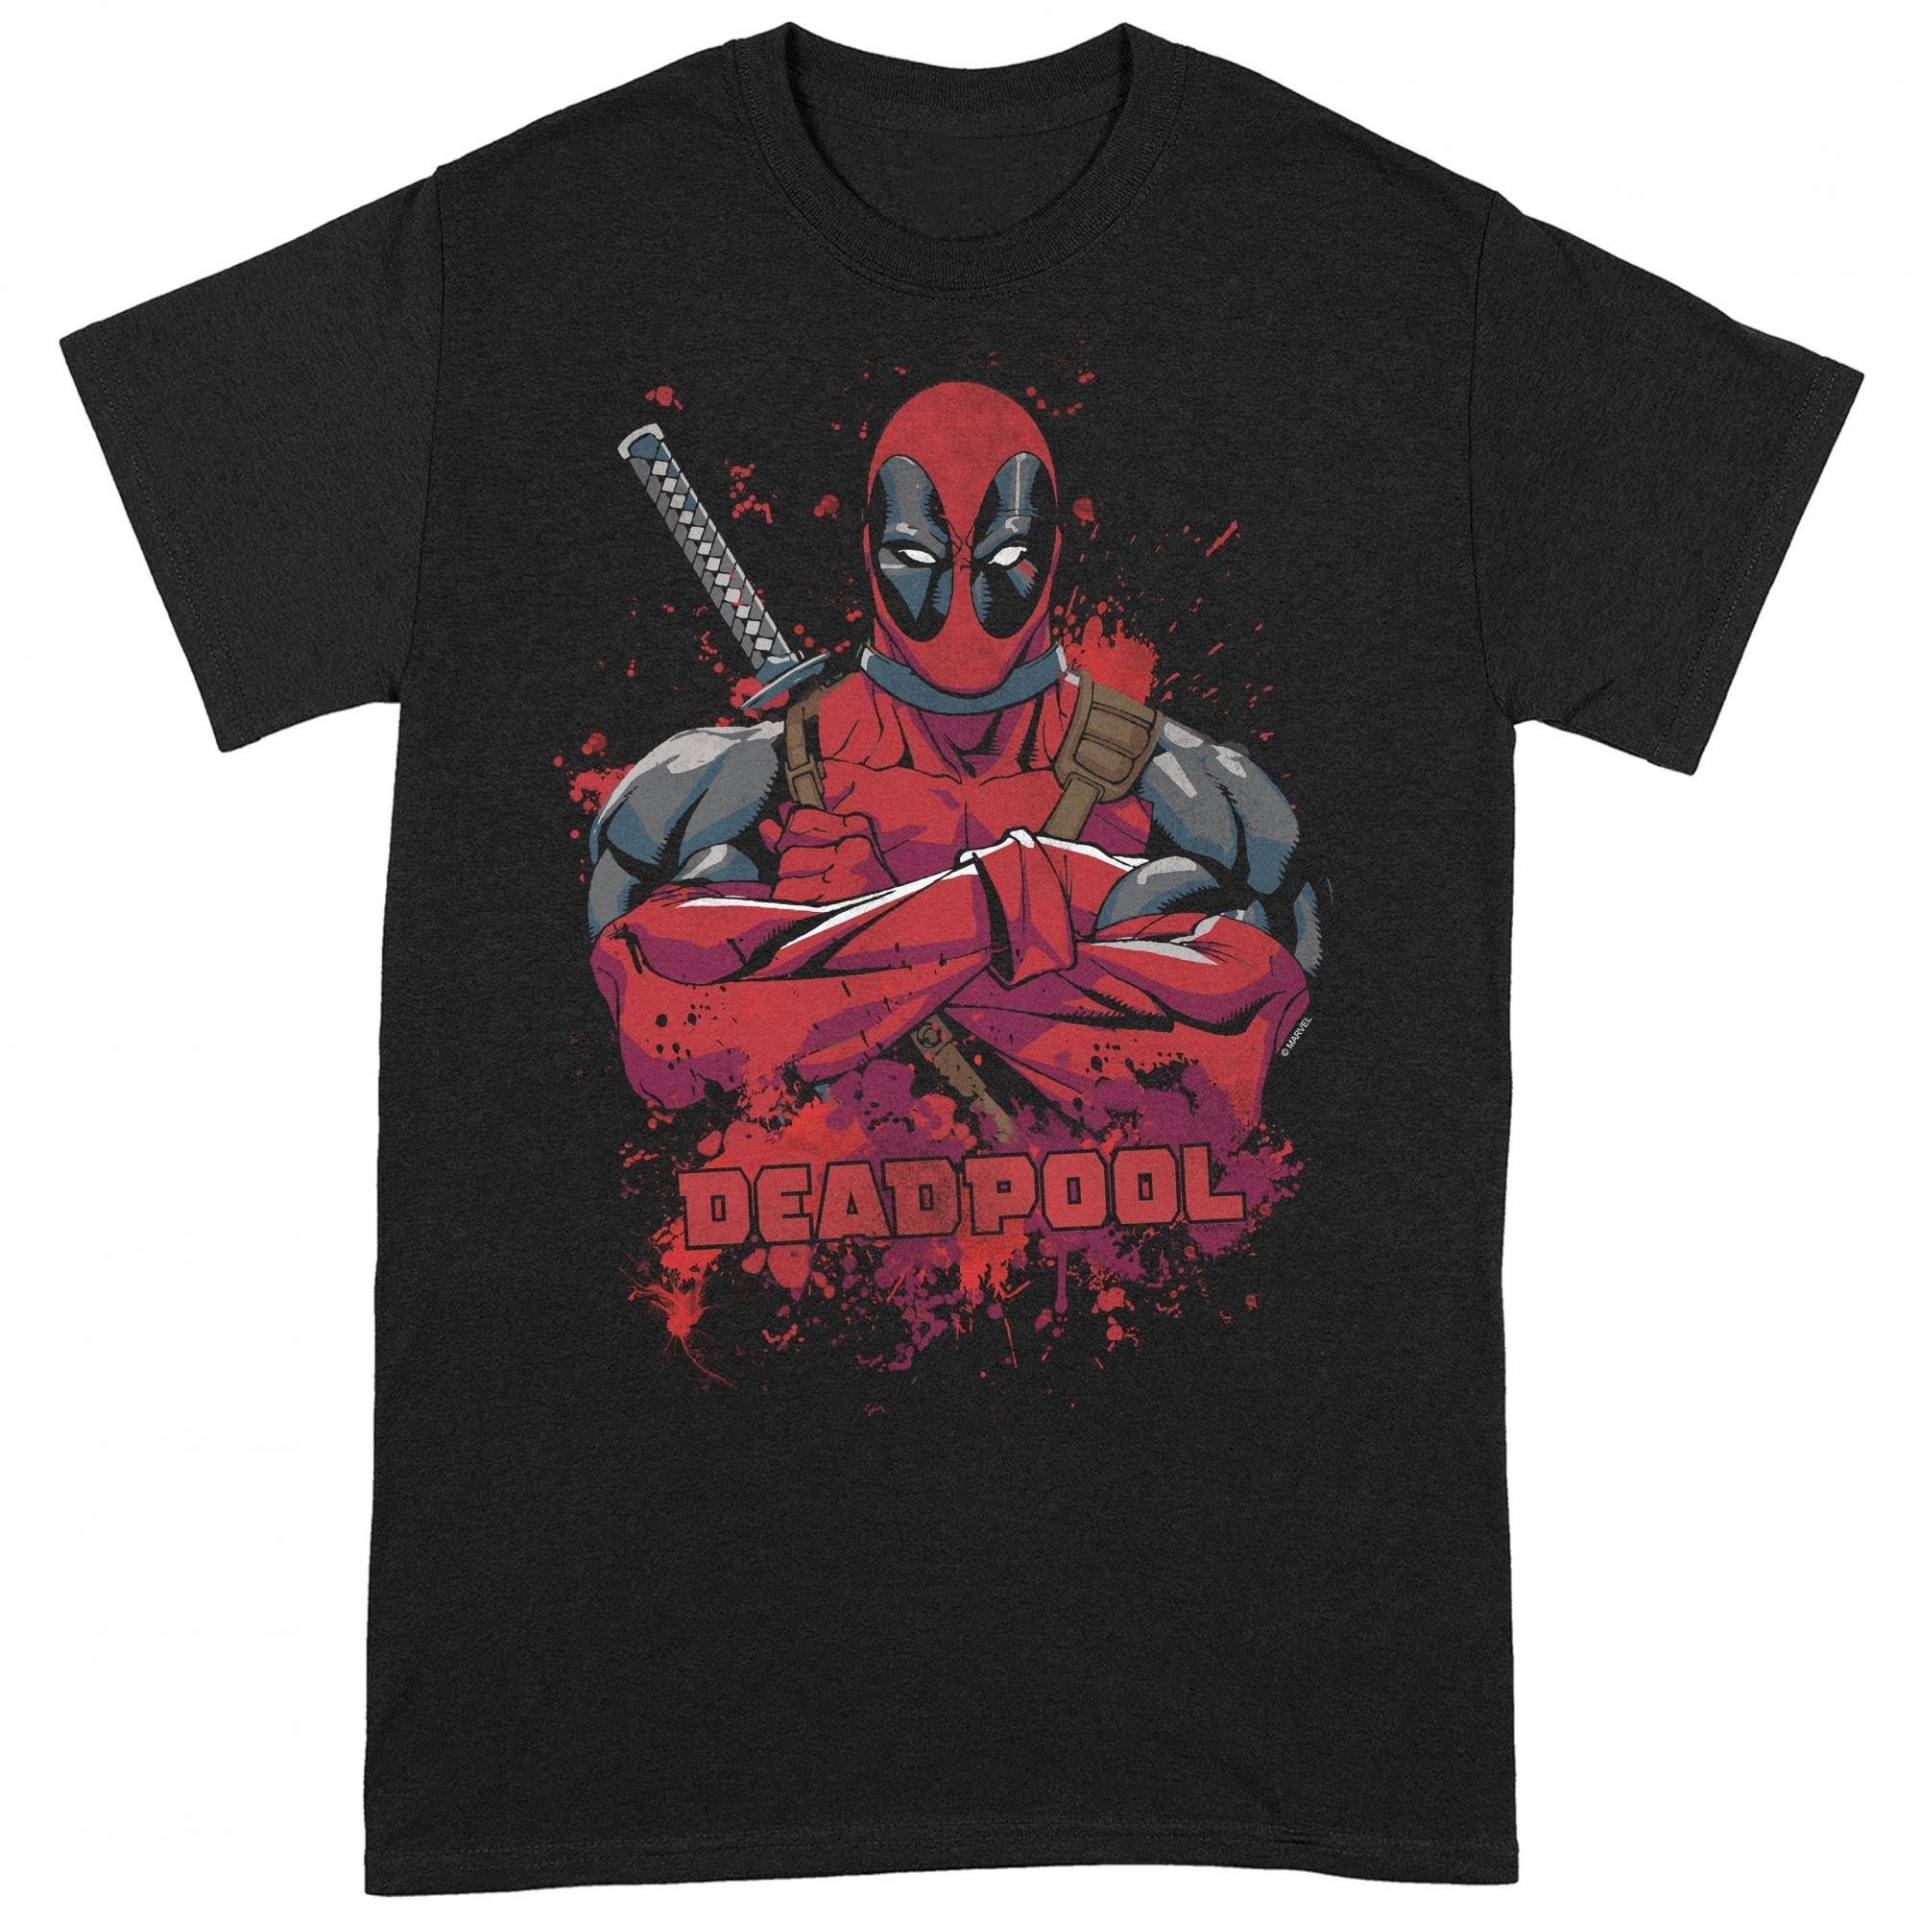 Tshirt Herren Schwarz XL von Deadpool